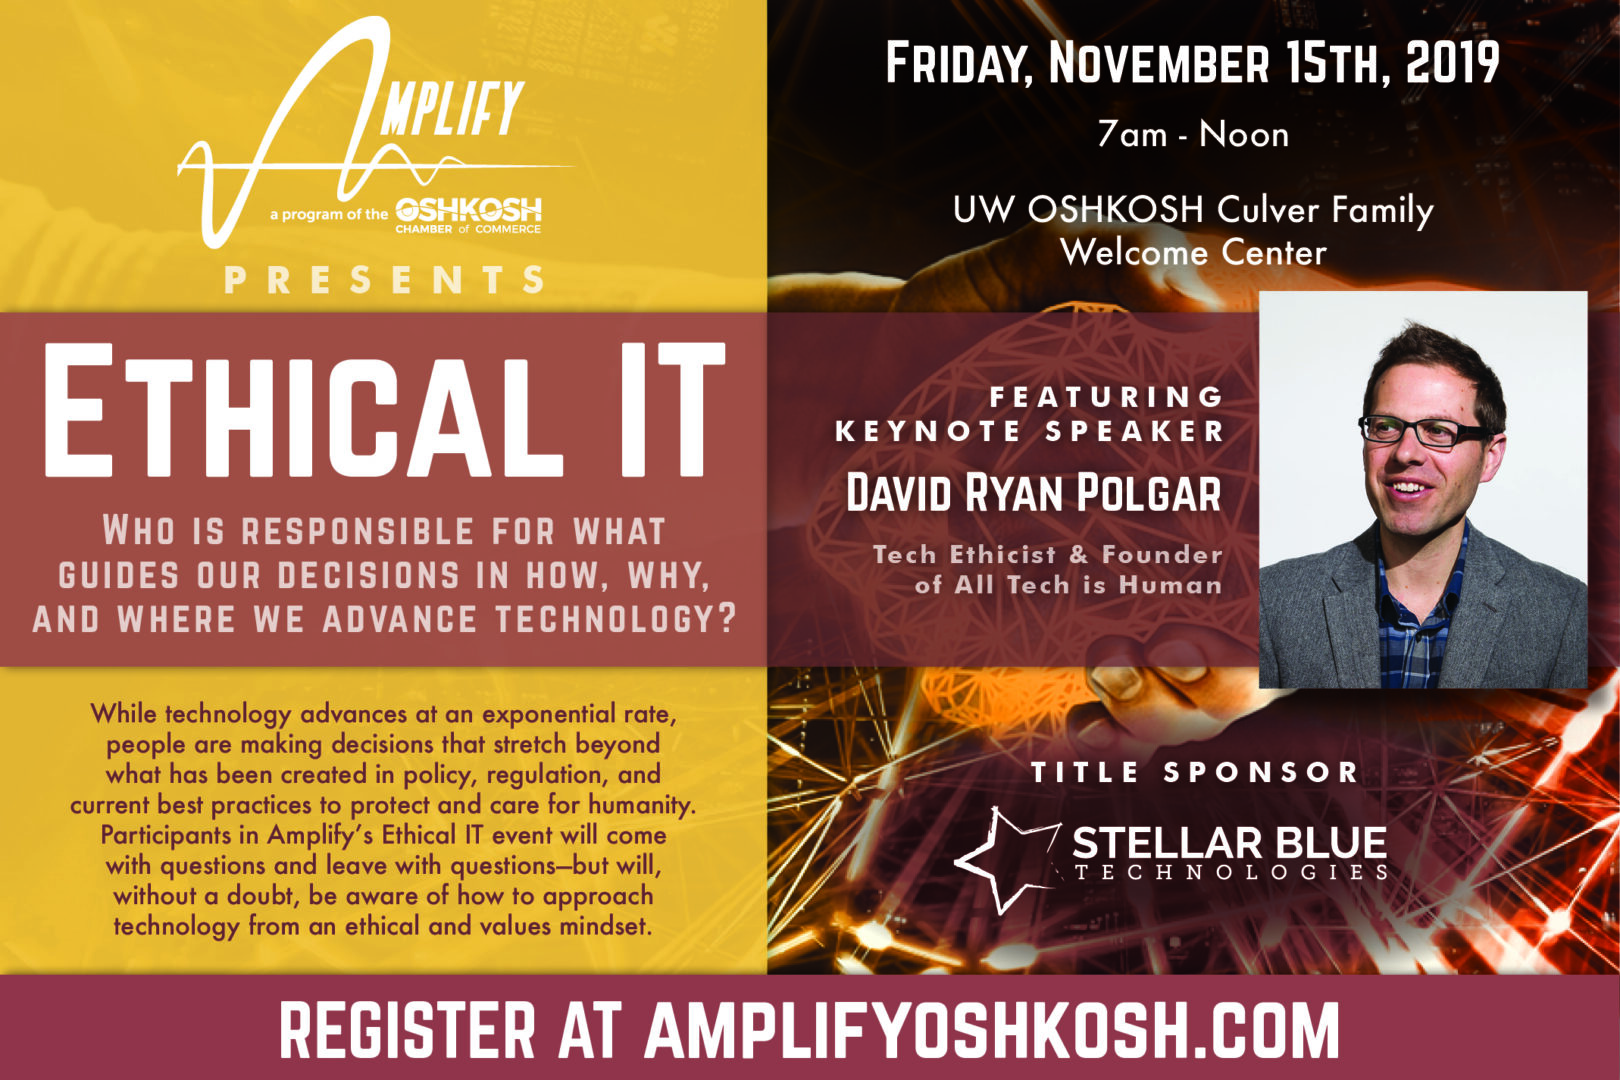 Amplify Oshkosh Ethical IT Conference